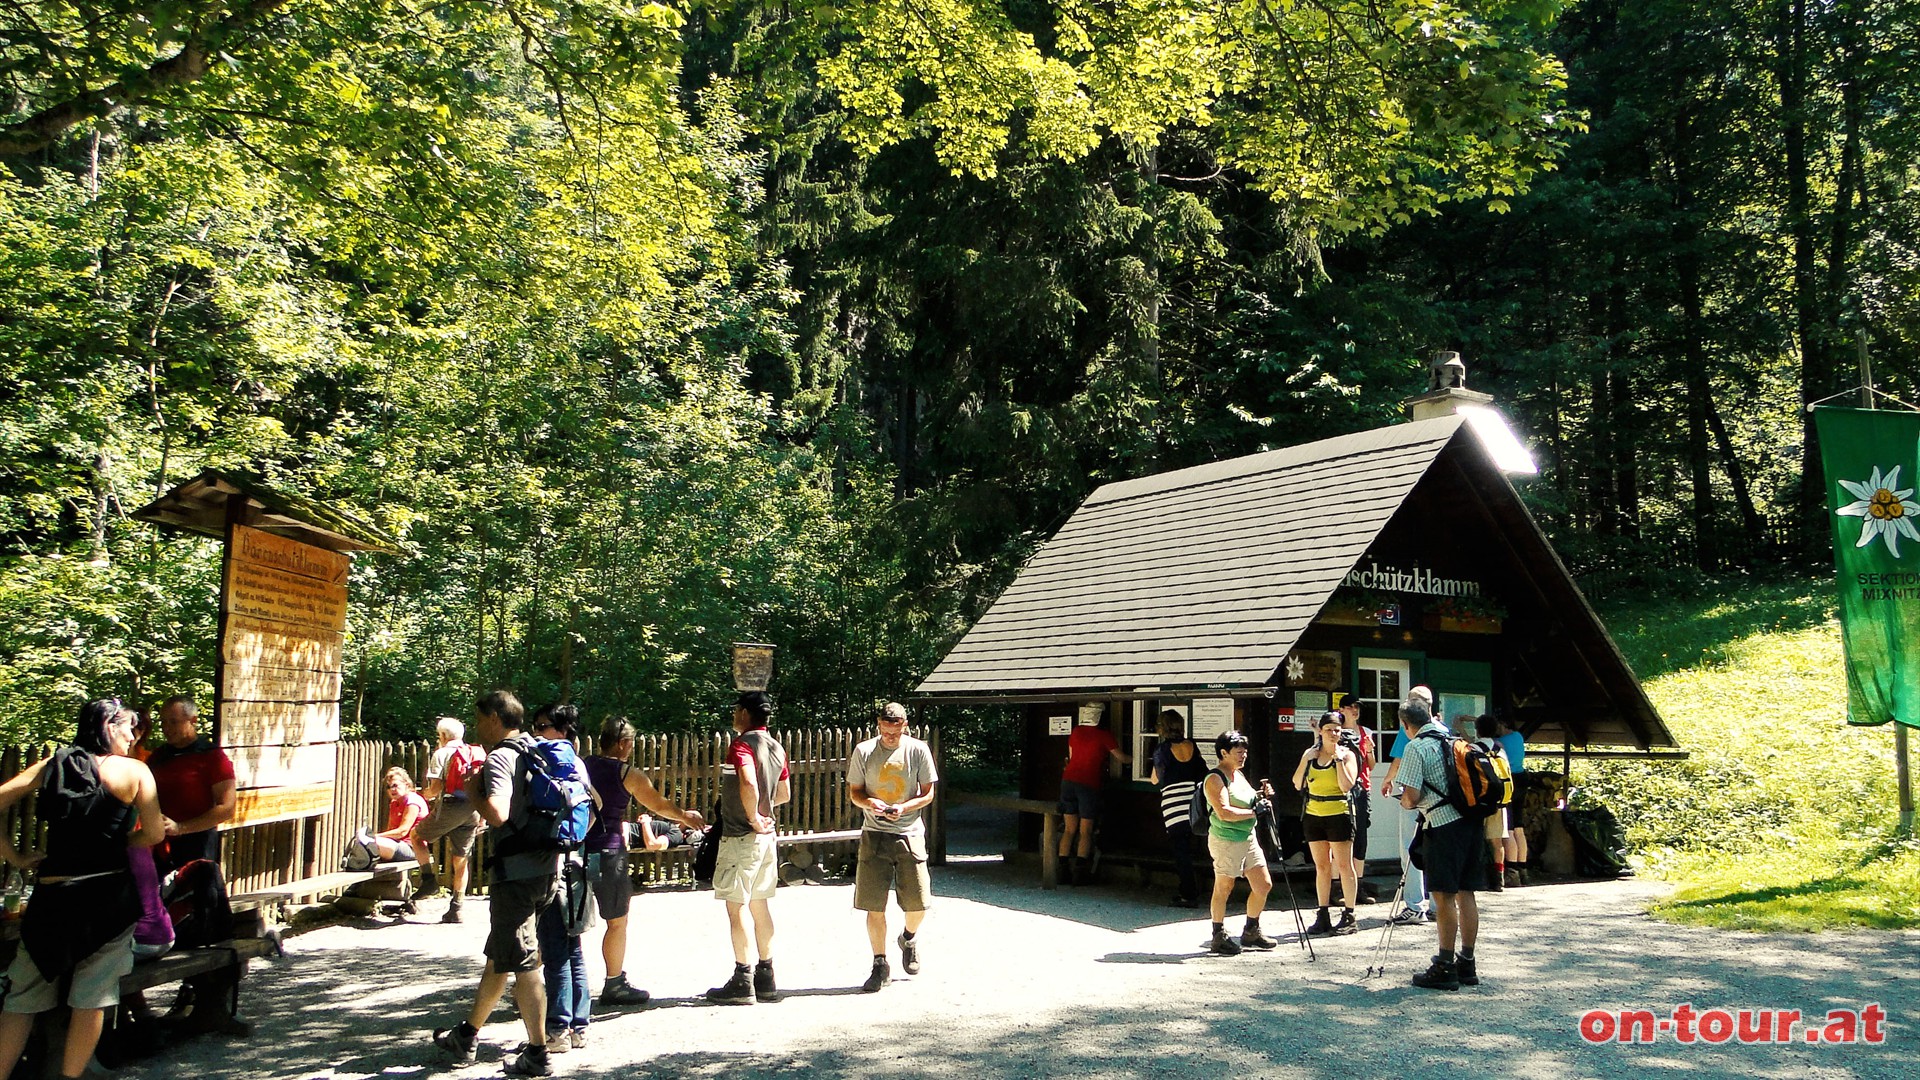 Bei der Hans-Kerl-Hütte, einer Diensthütte des Alpenvereins, ist ein kleiner Obolus für die Begehung der Steiganlage zu entrichten.